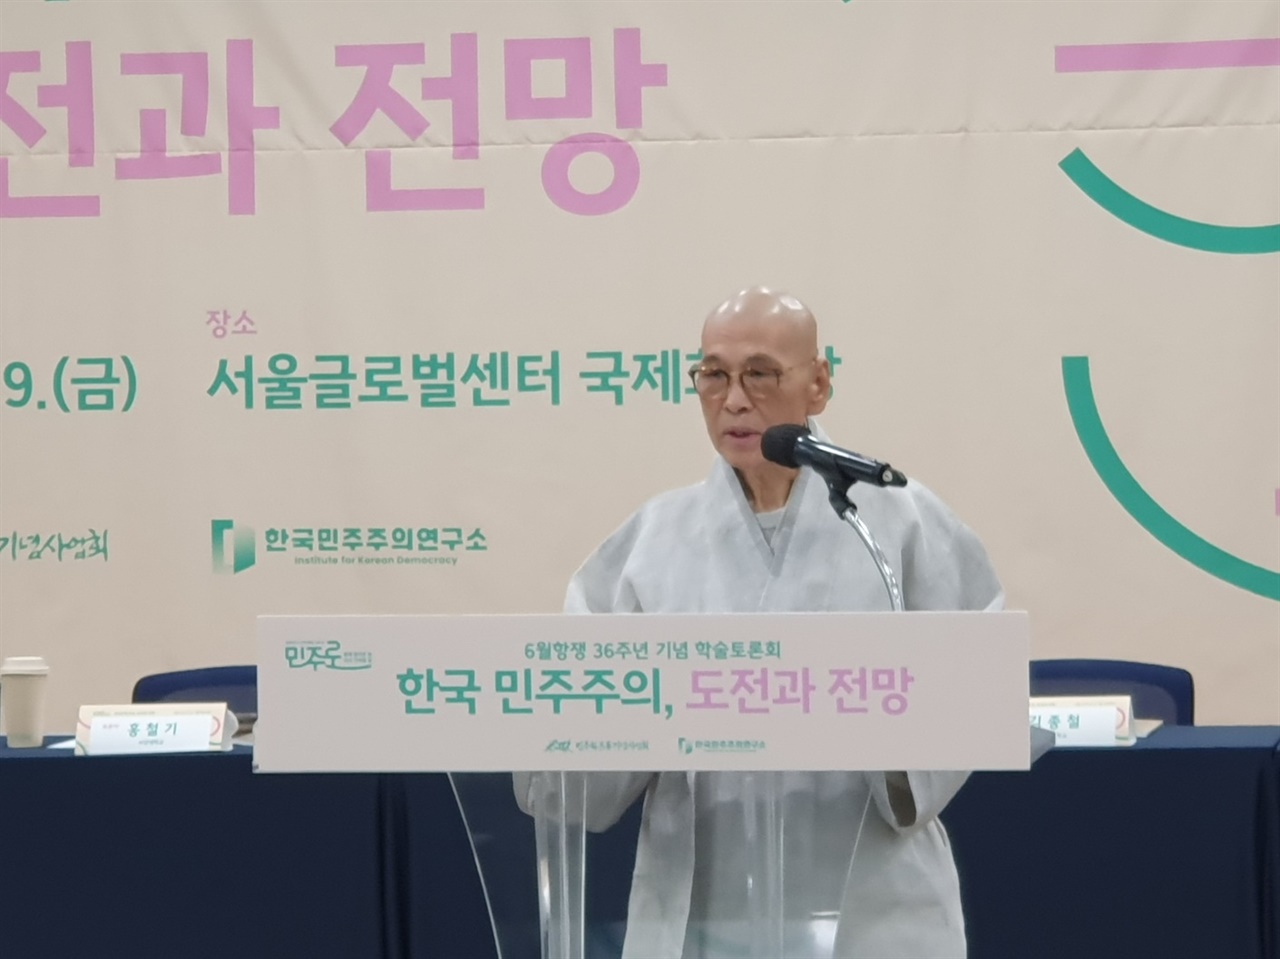 민주화운동기념사업회 한국민주주의연구소가 서울글로벌센터에서 개최한 학술토론회에서 지선 이사장이 인사말을 하고 있다.